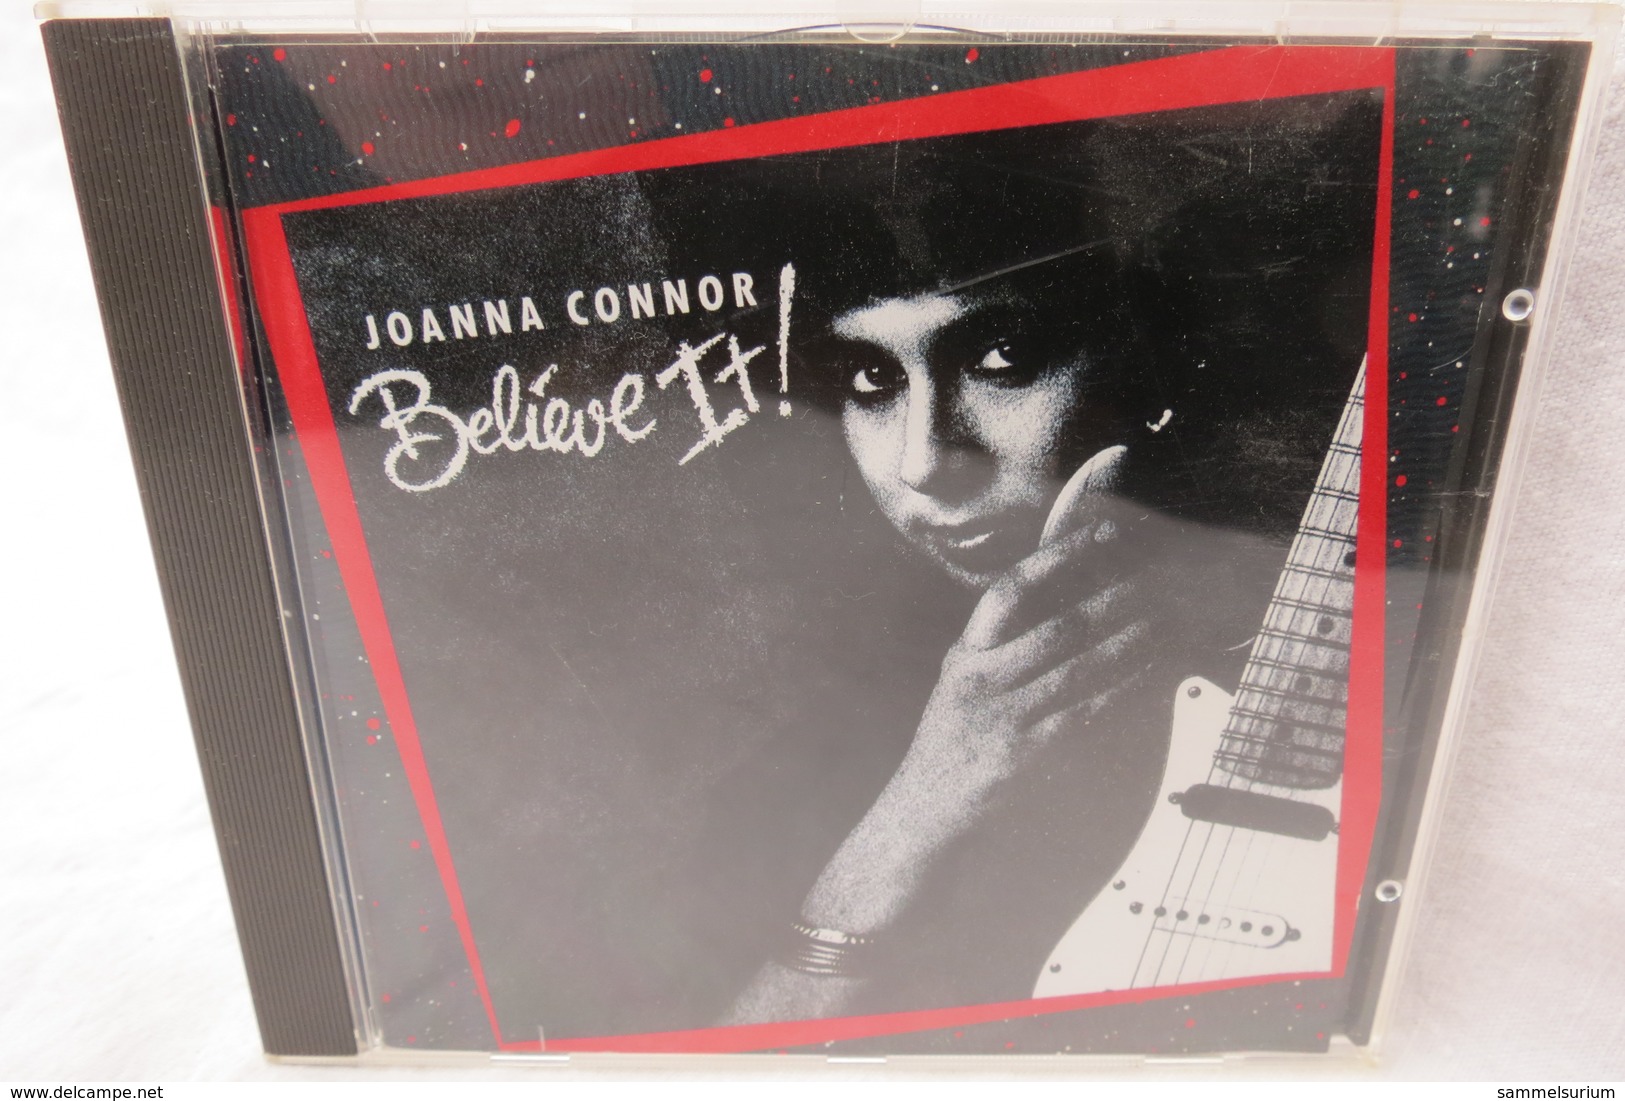 CD "Joanna Connor" Believe It! - Blues